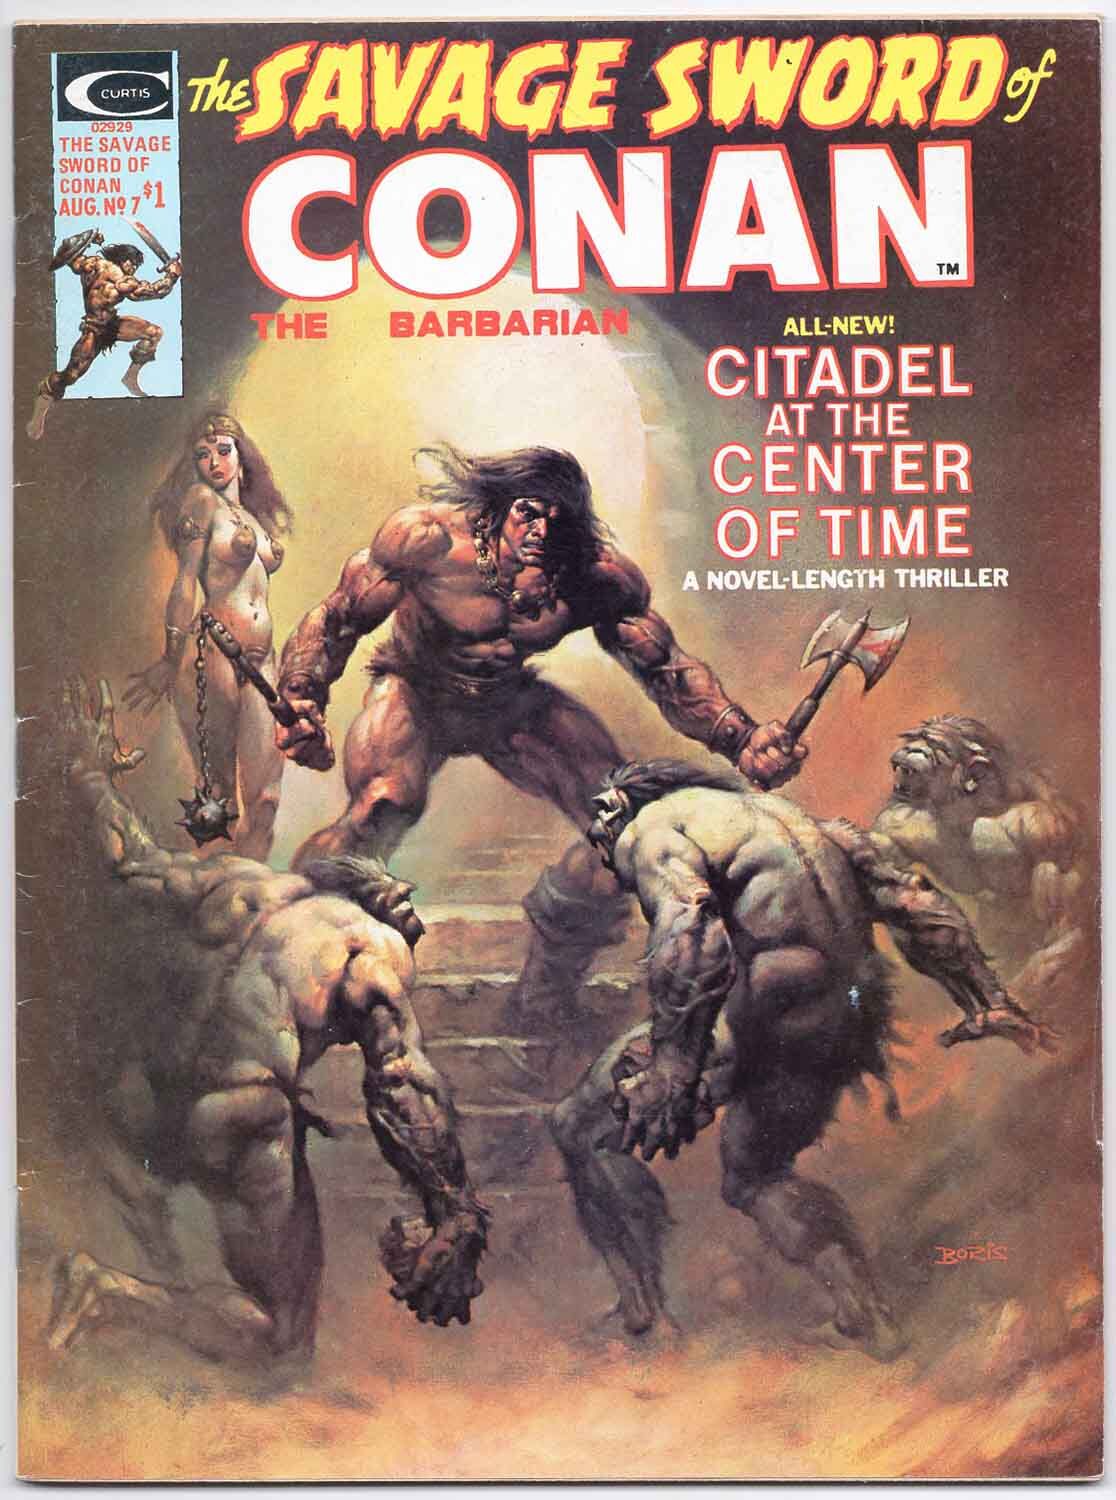 Savage Sword of Conan the Barbarian #7